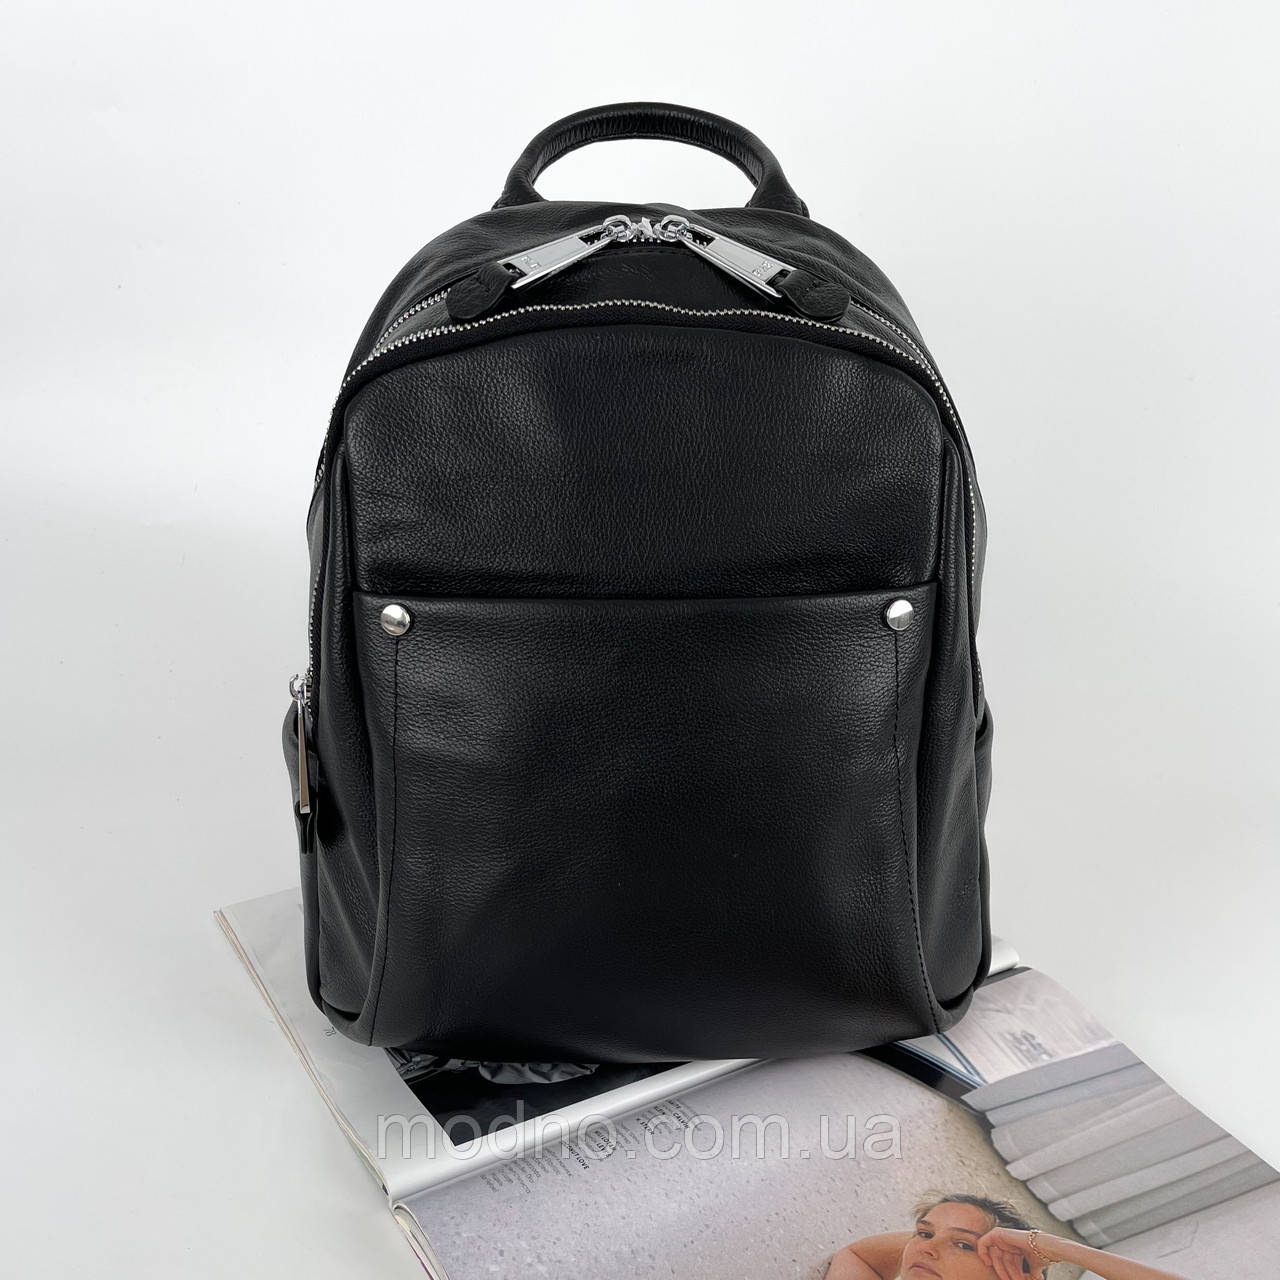 Жіночий шкіряний міський рюкзак на одне відділення Polina & Eiterou чорний